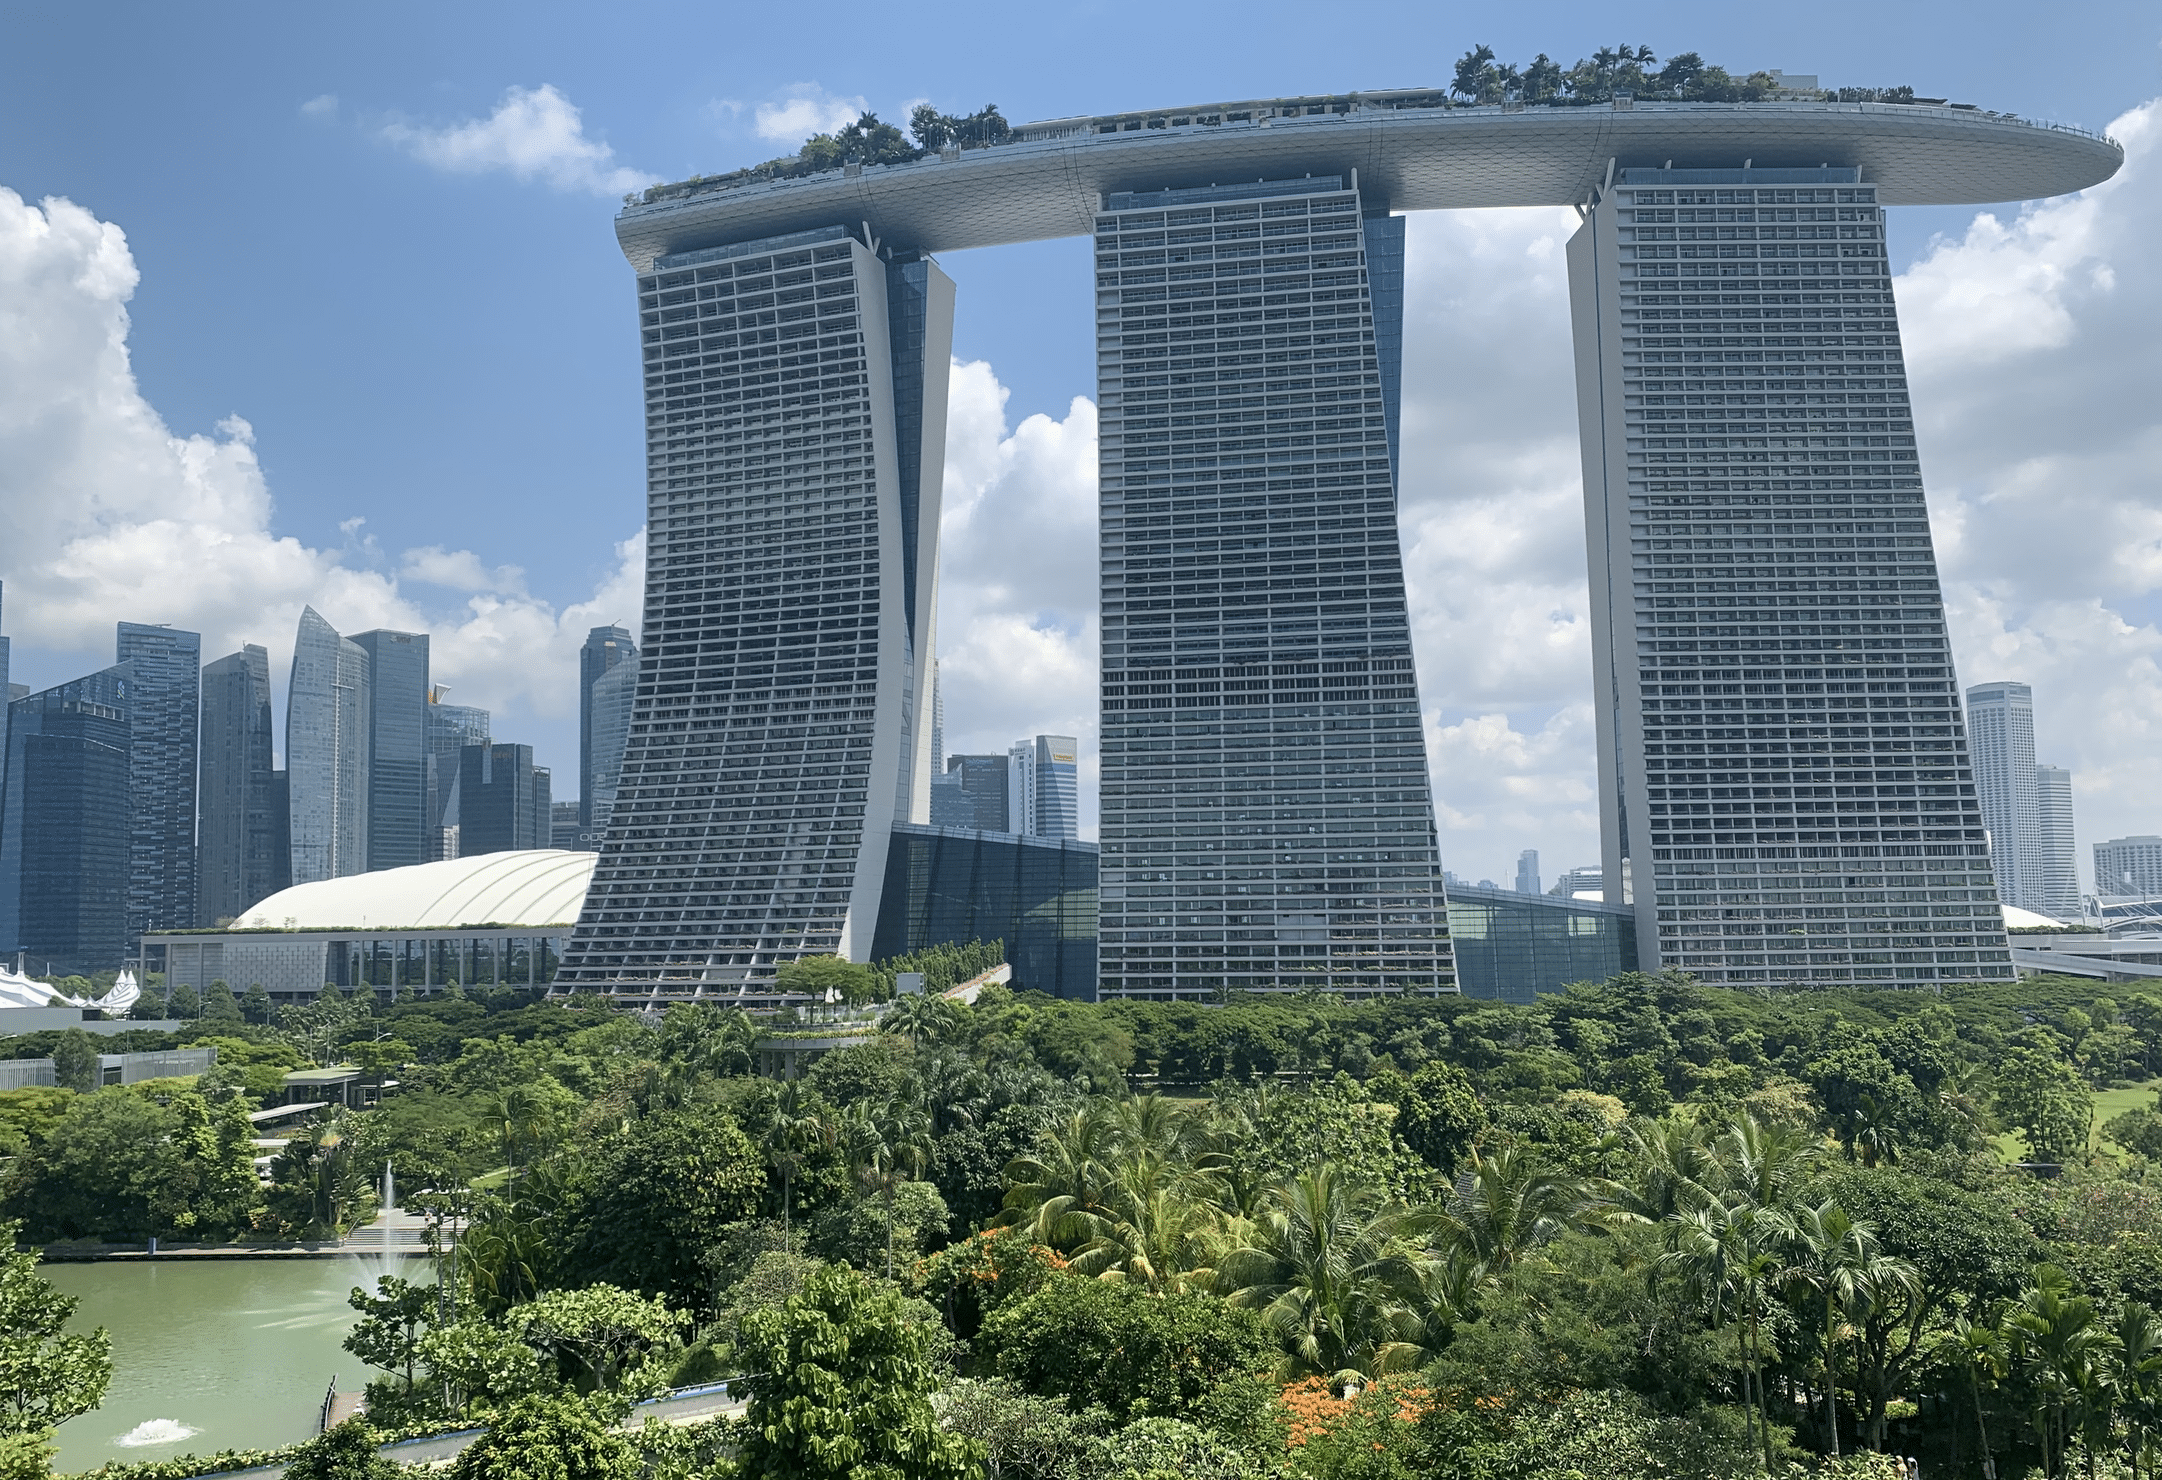 la vue sur le marina bay sands depuis les jardins botaniques de singapour